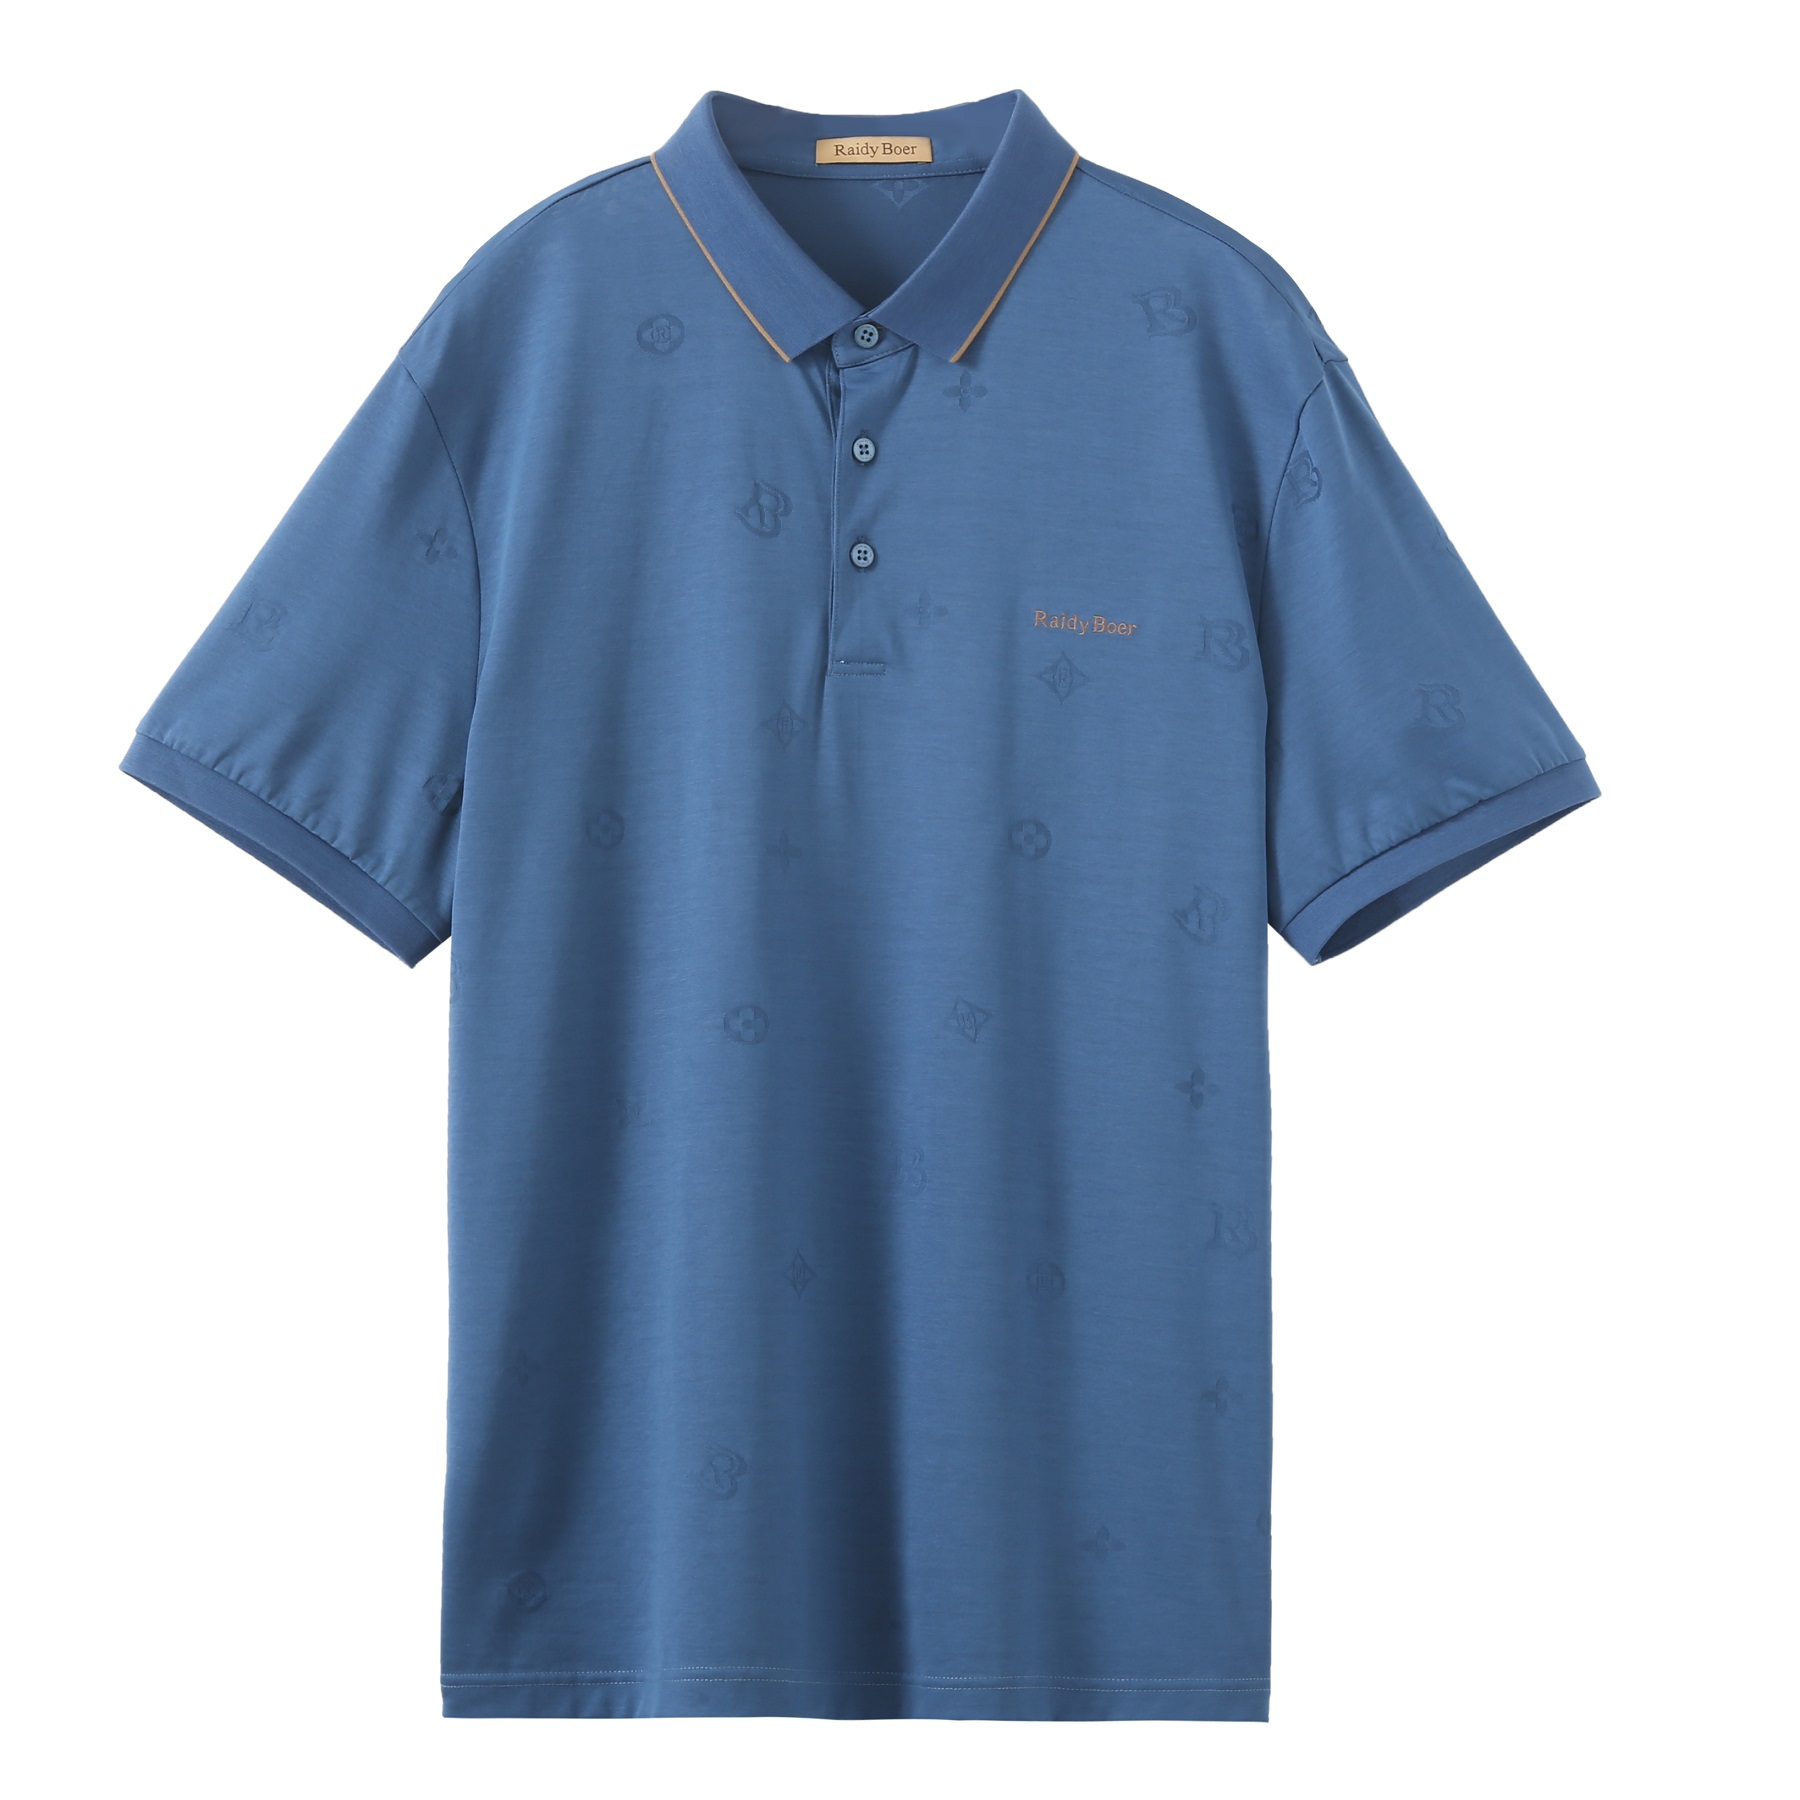 Wholesale latest design Apparel Factory Men’s Plain golf polo shirt t shirt